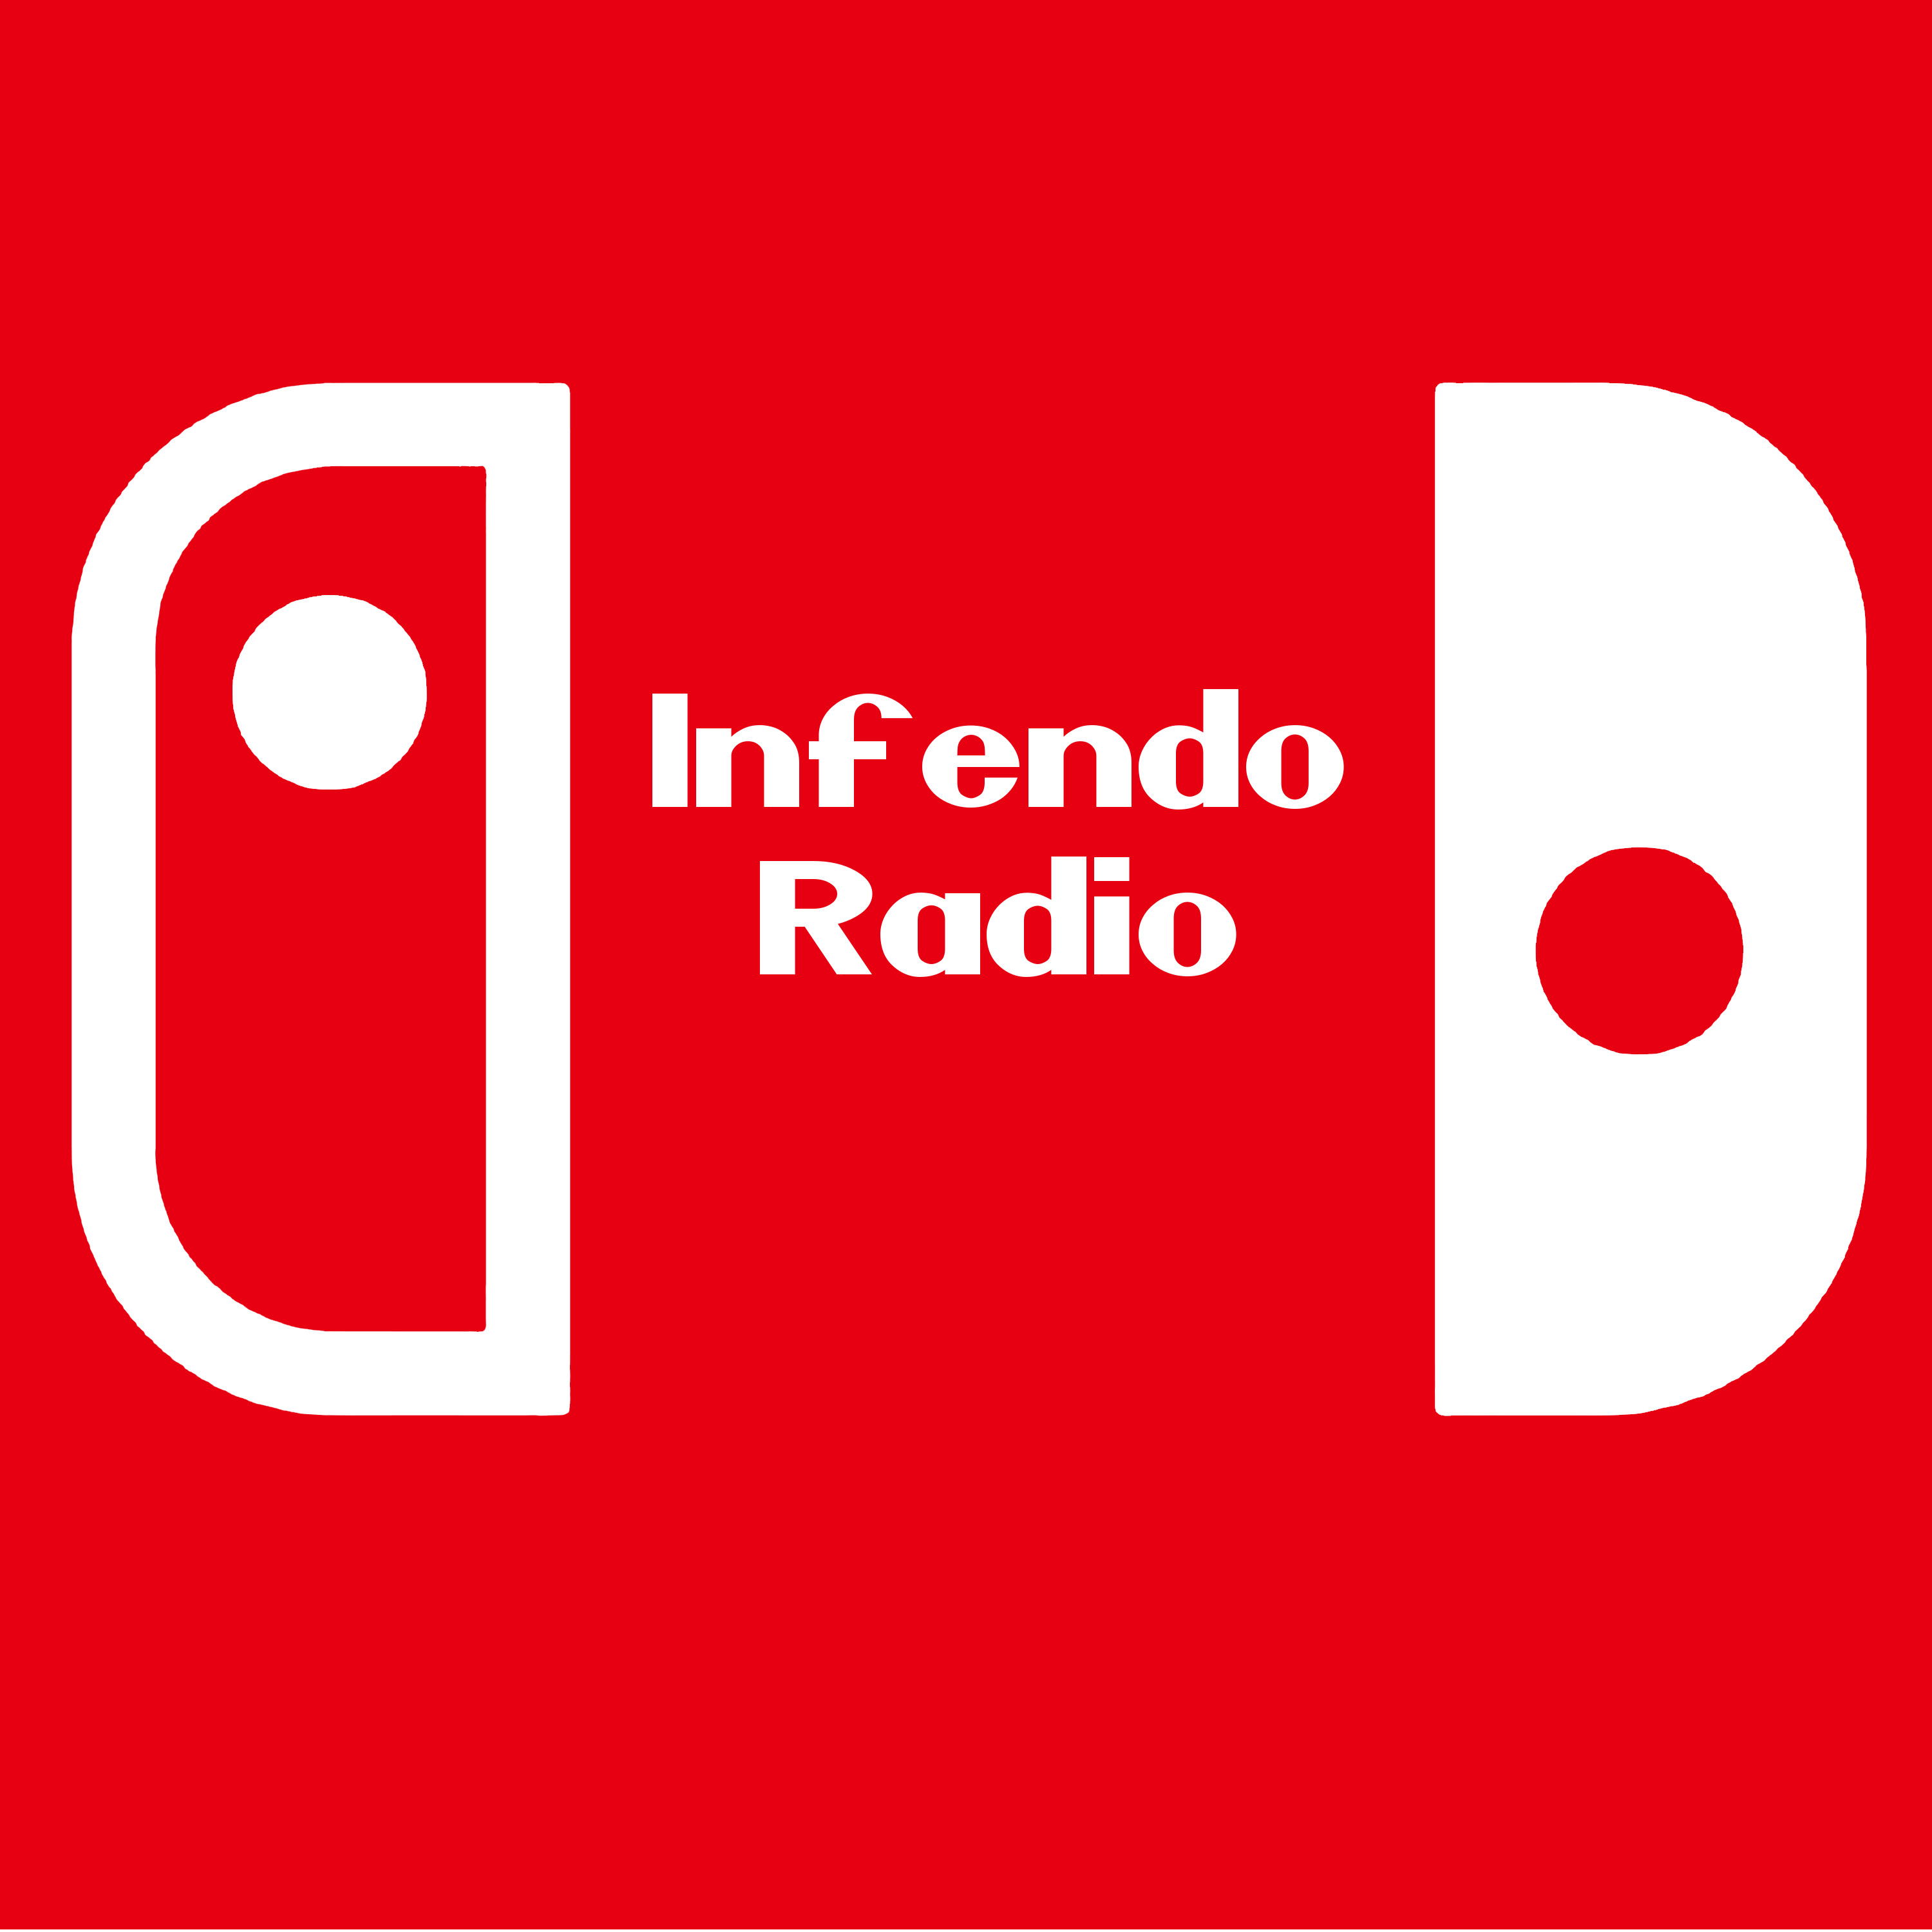 Infendo: Nintendo News, Review, Blog, and Podcast